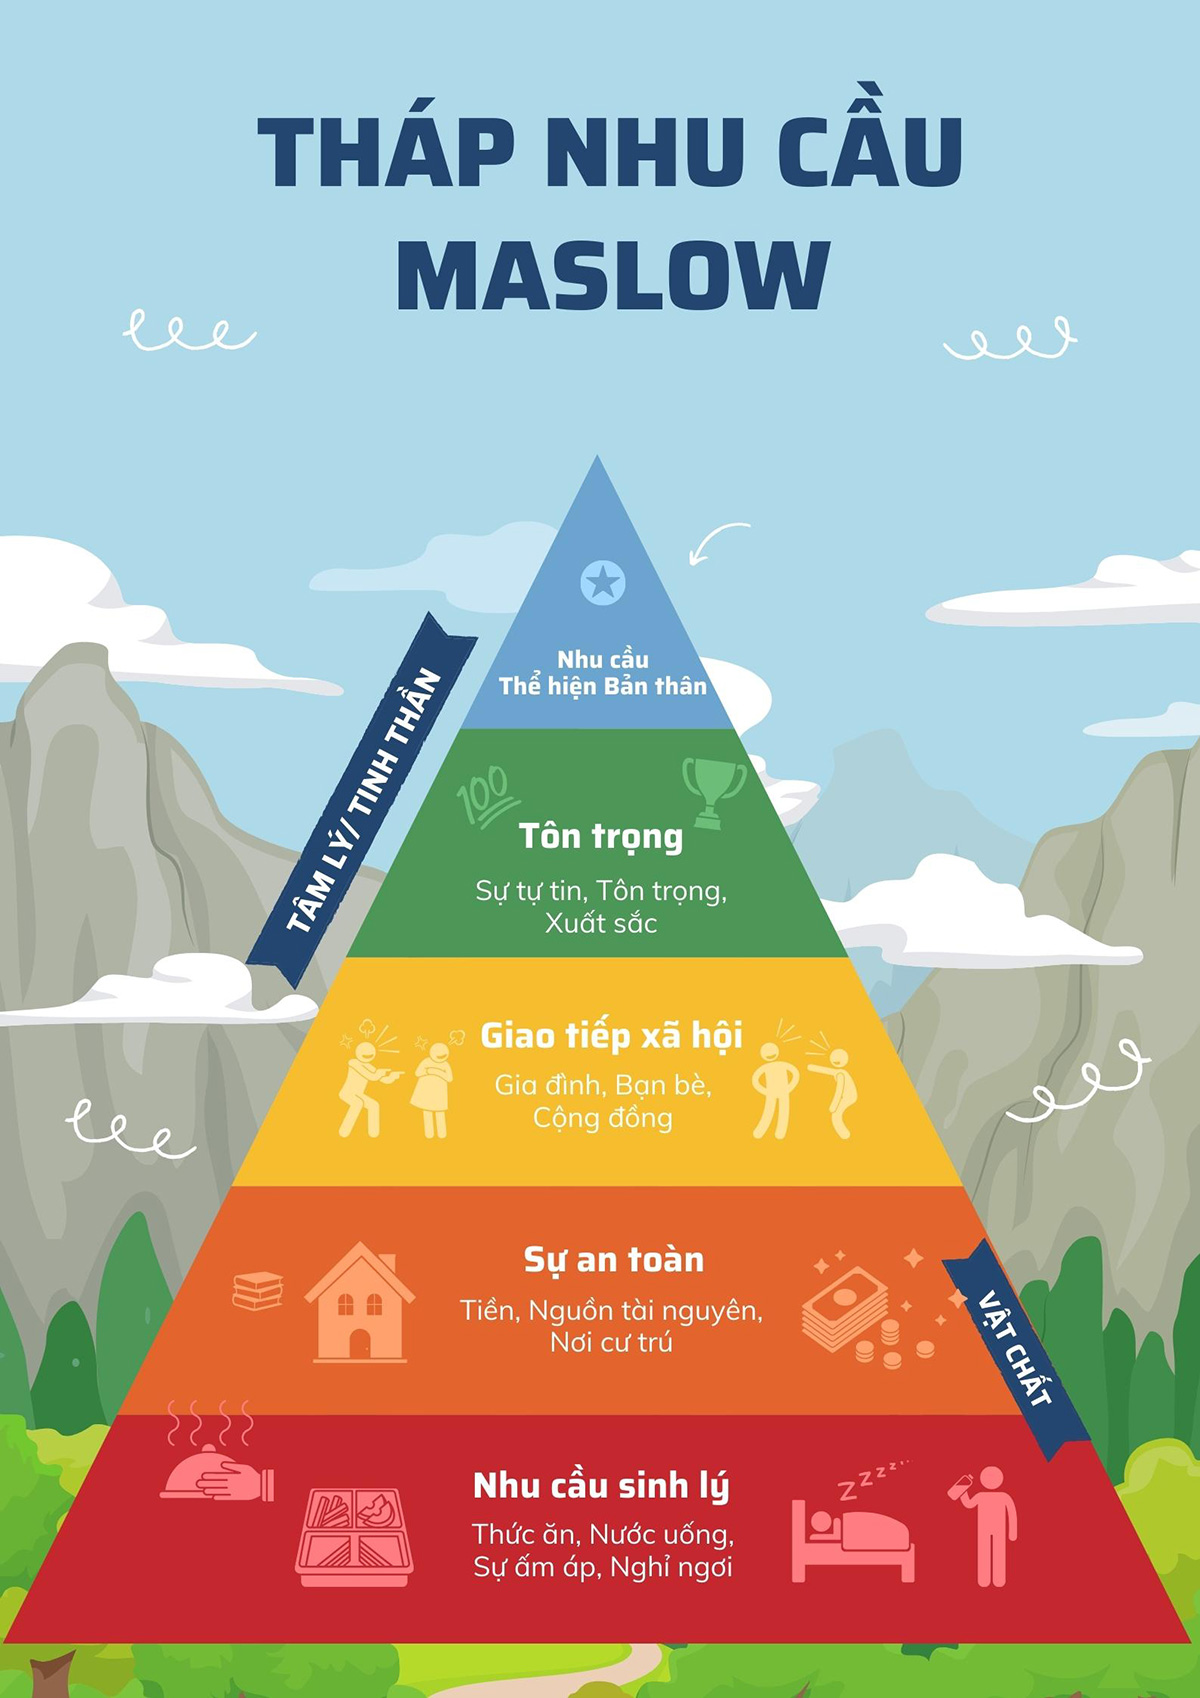 Thuyết nhu cầu của Maslow và ứng dụng trong các lĩnh vực